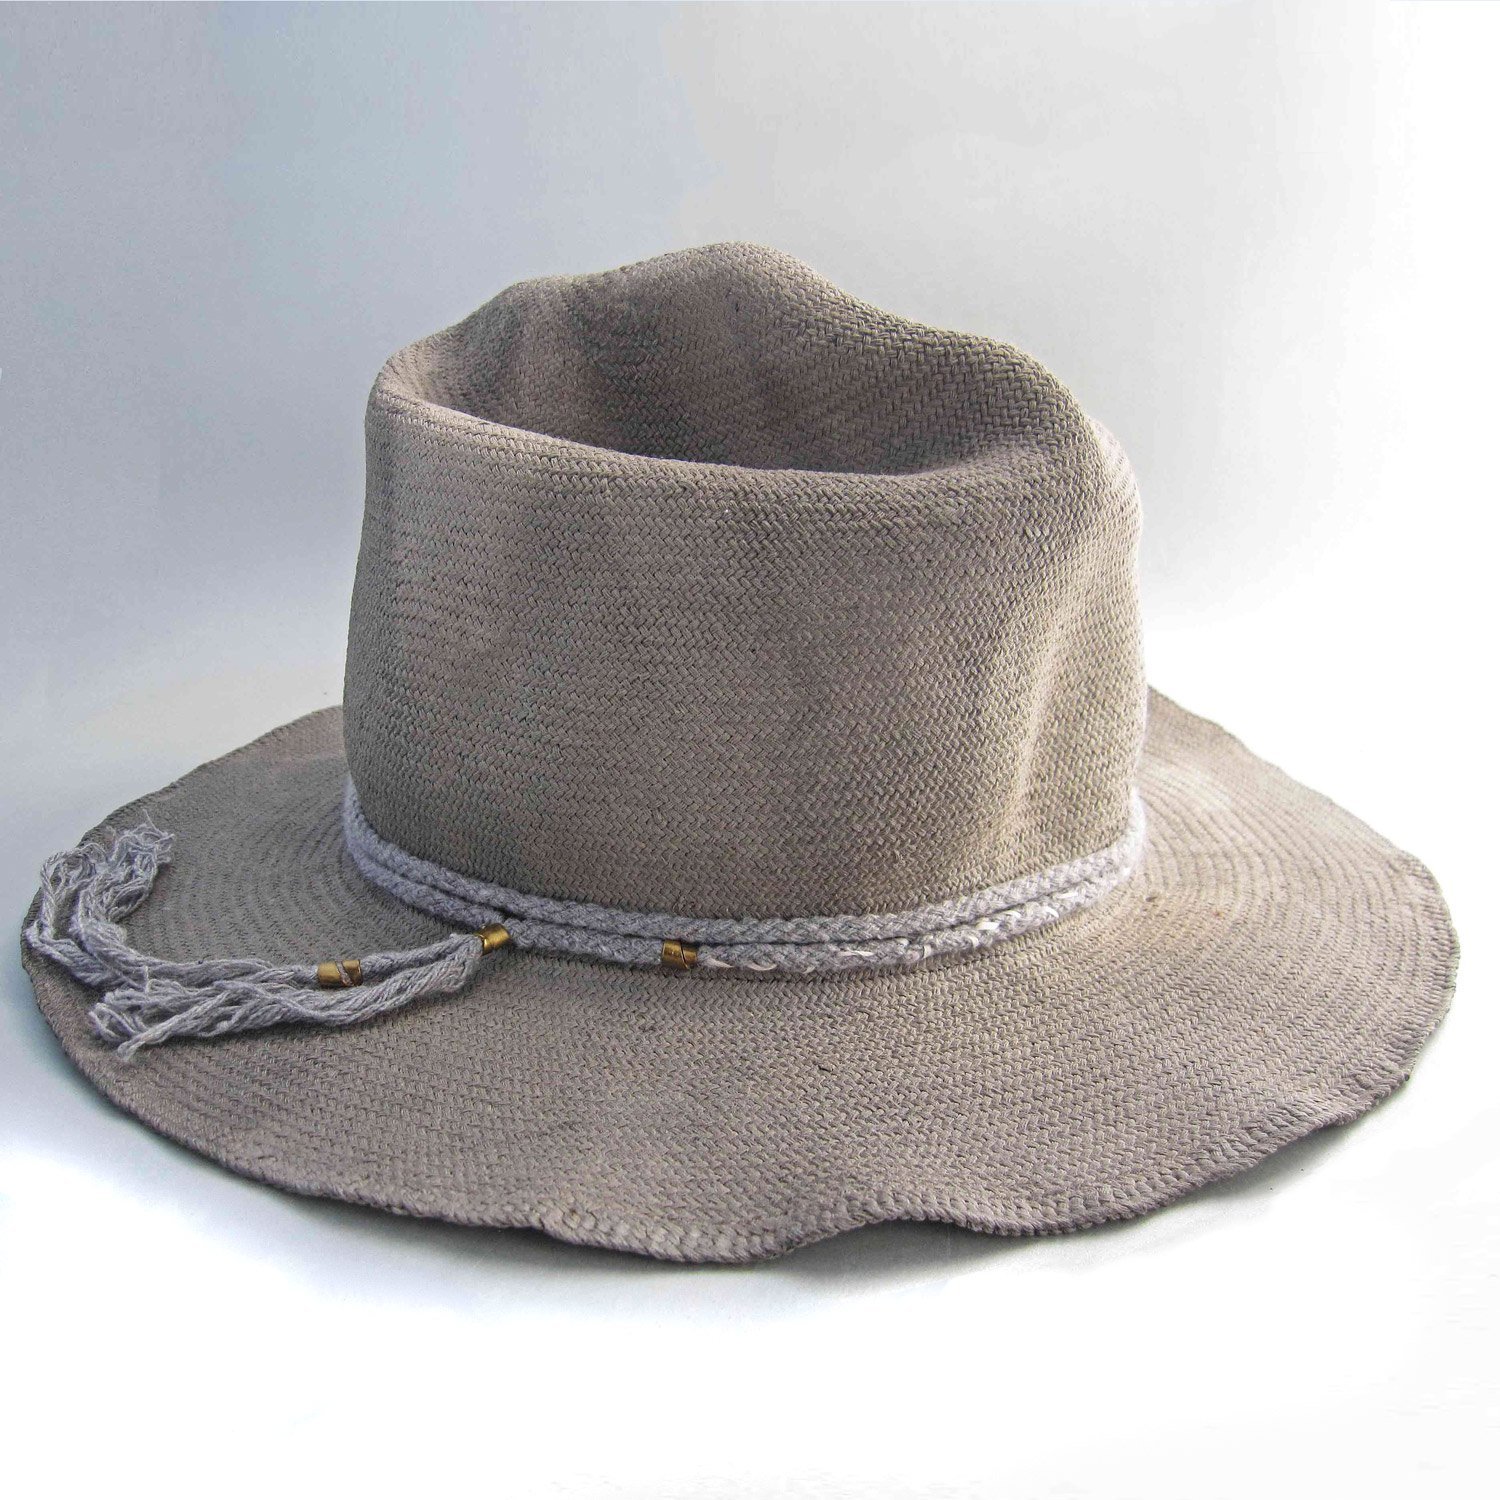 hat-band-1.jpg